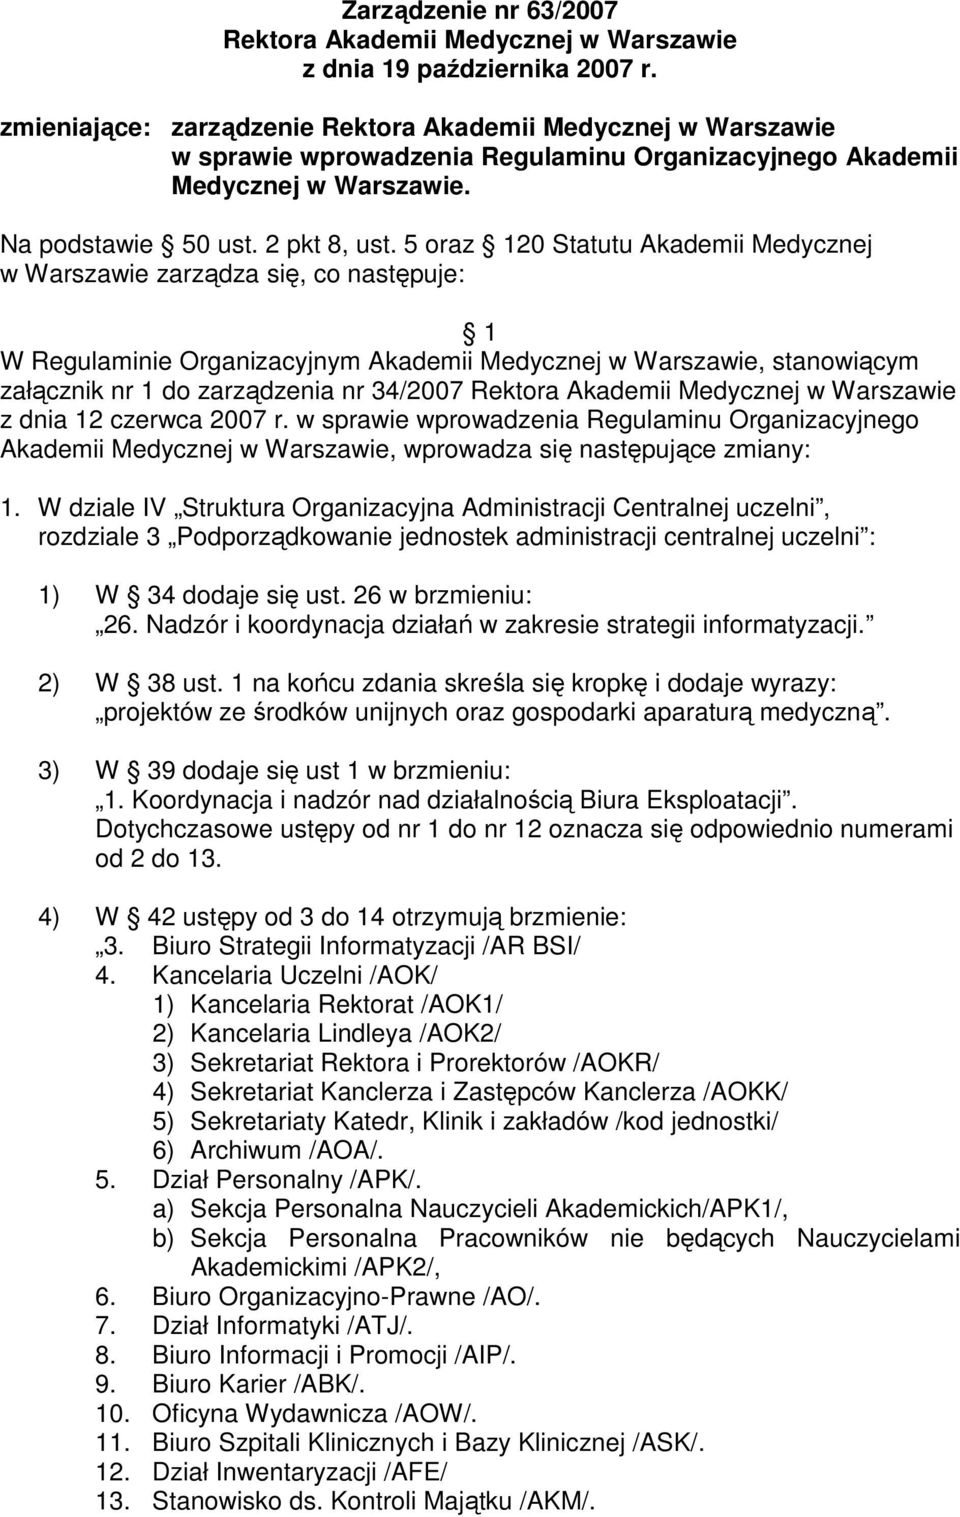 5 oraz 120 Statutu Akademii Medycznej w Warszawie zarządza się, co następuje: 1 W Regulaminie Organizacyjnym Akademii Medycznej w Warszawie, stanowiącym załącznik nr 1 do zarządzenia nr 34/2007